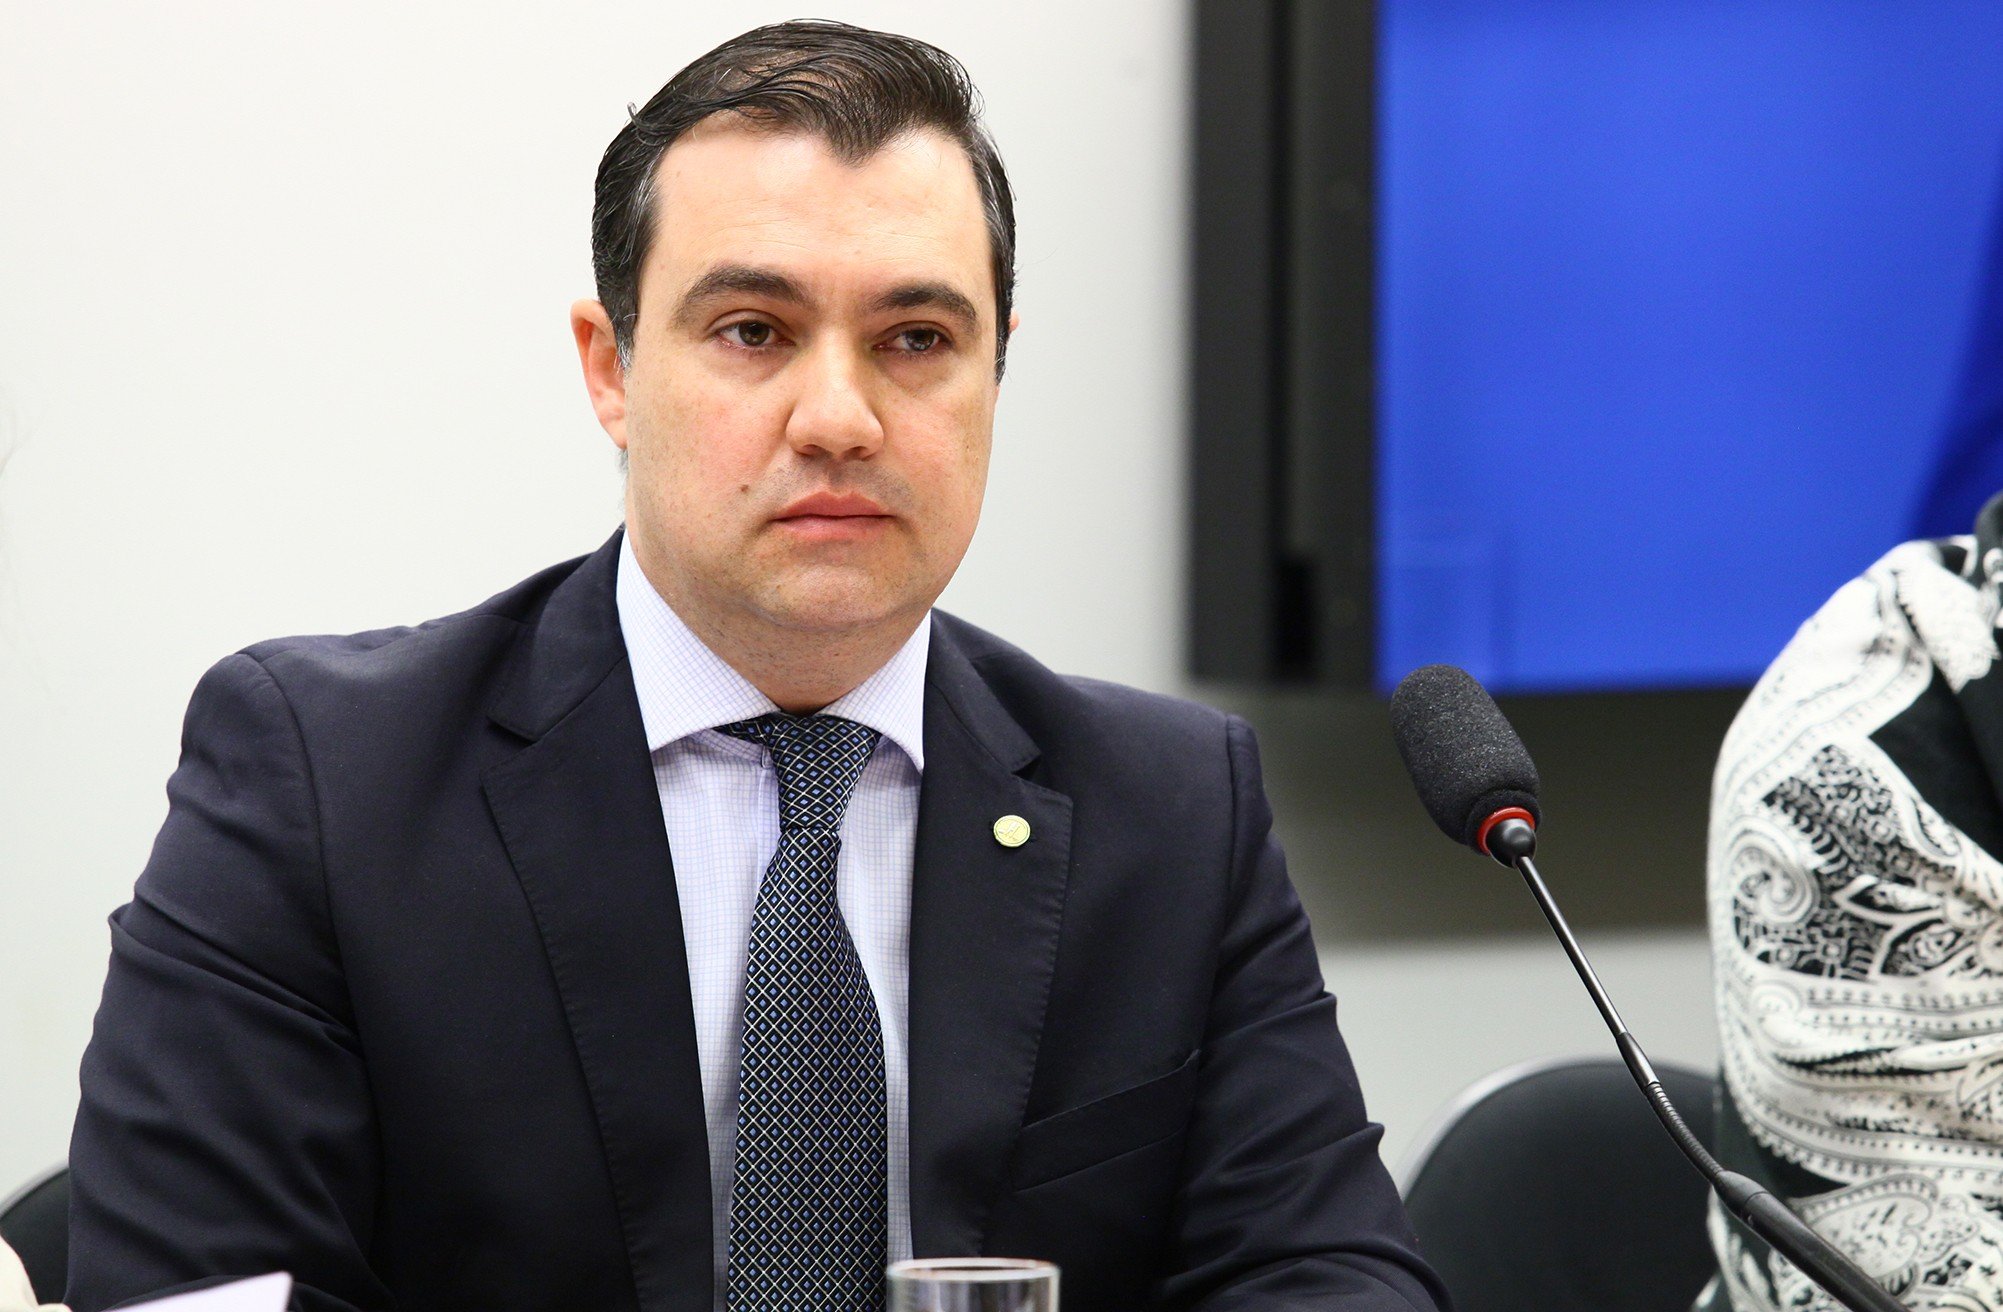 O deputado Luiz Lauro Filho (PSB-SP), em audiência pública para discutir a queda na produção de veículos e dispensa de trabalhadores no país e no Estado de São Paulo.